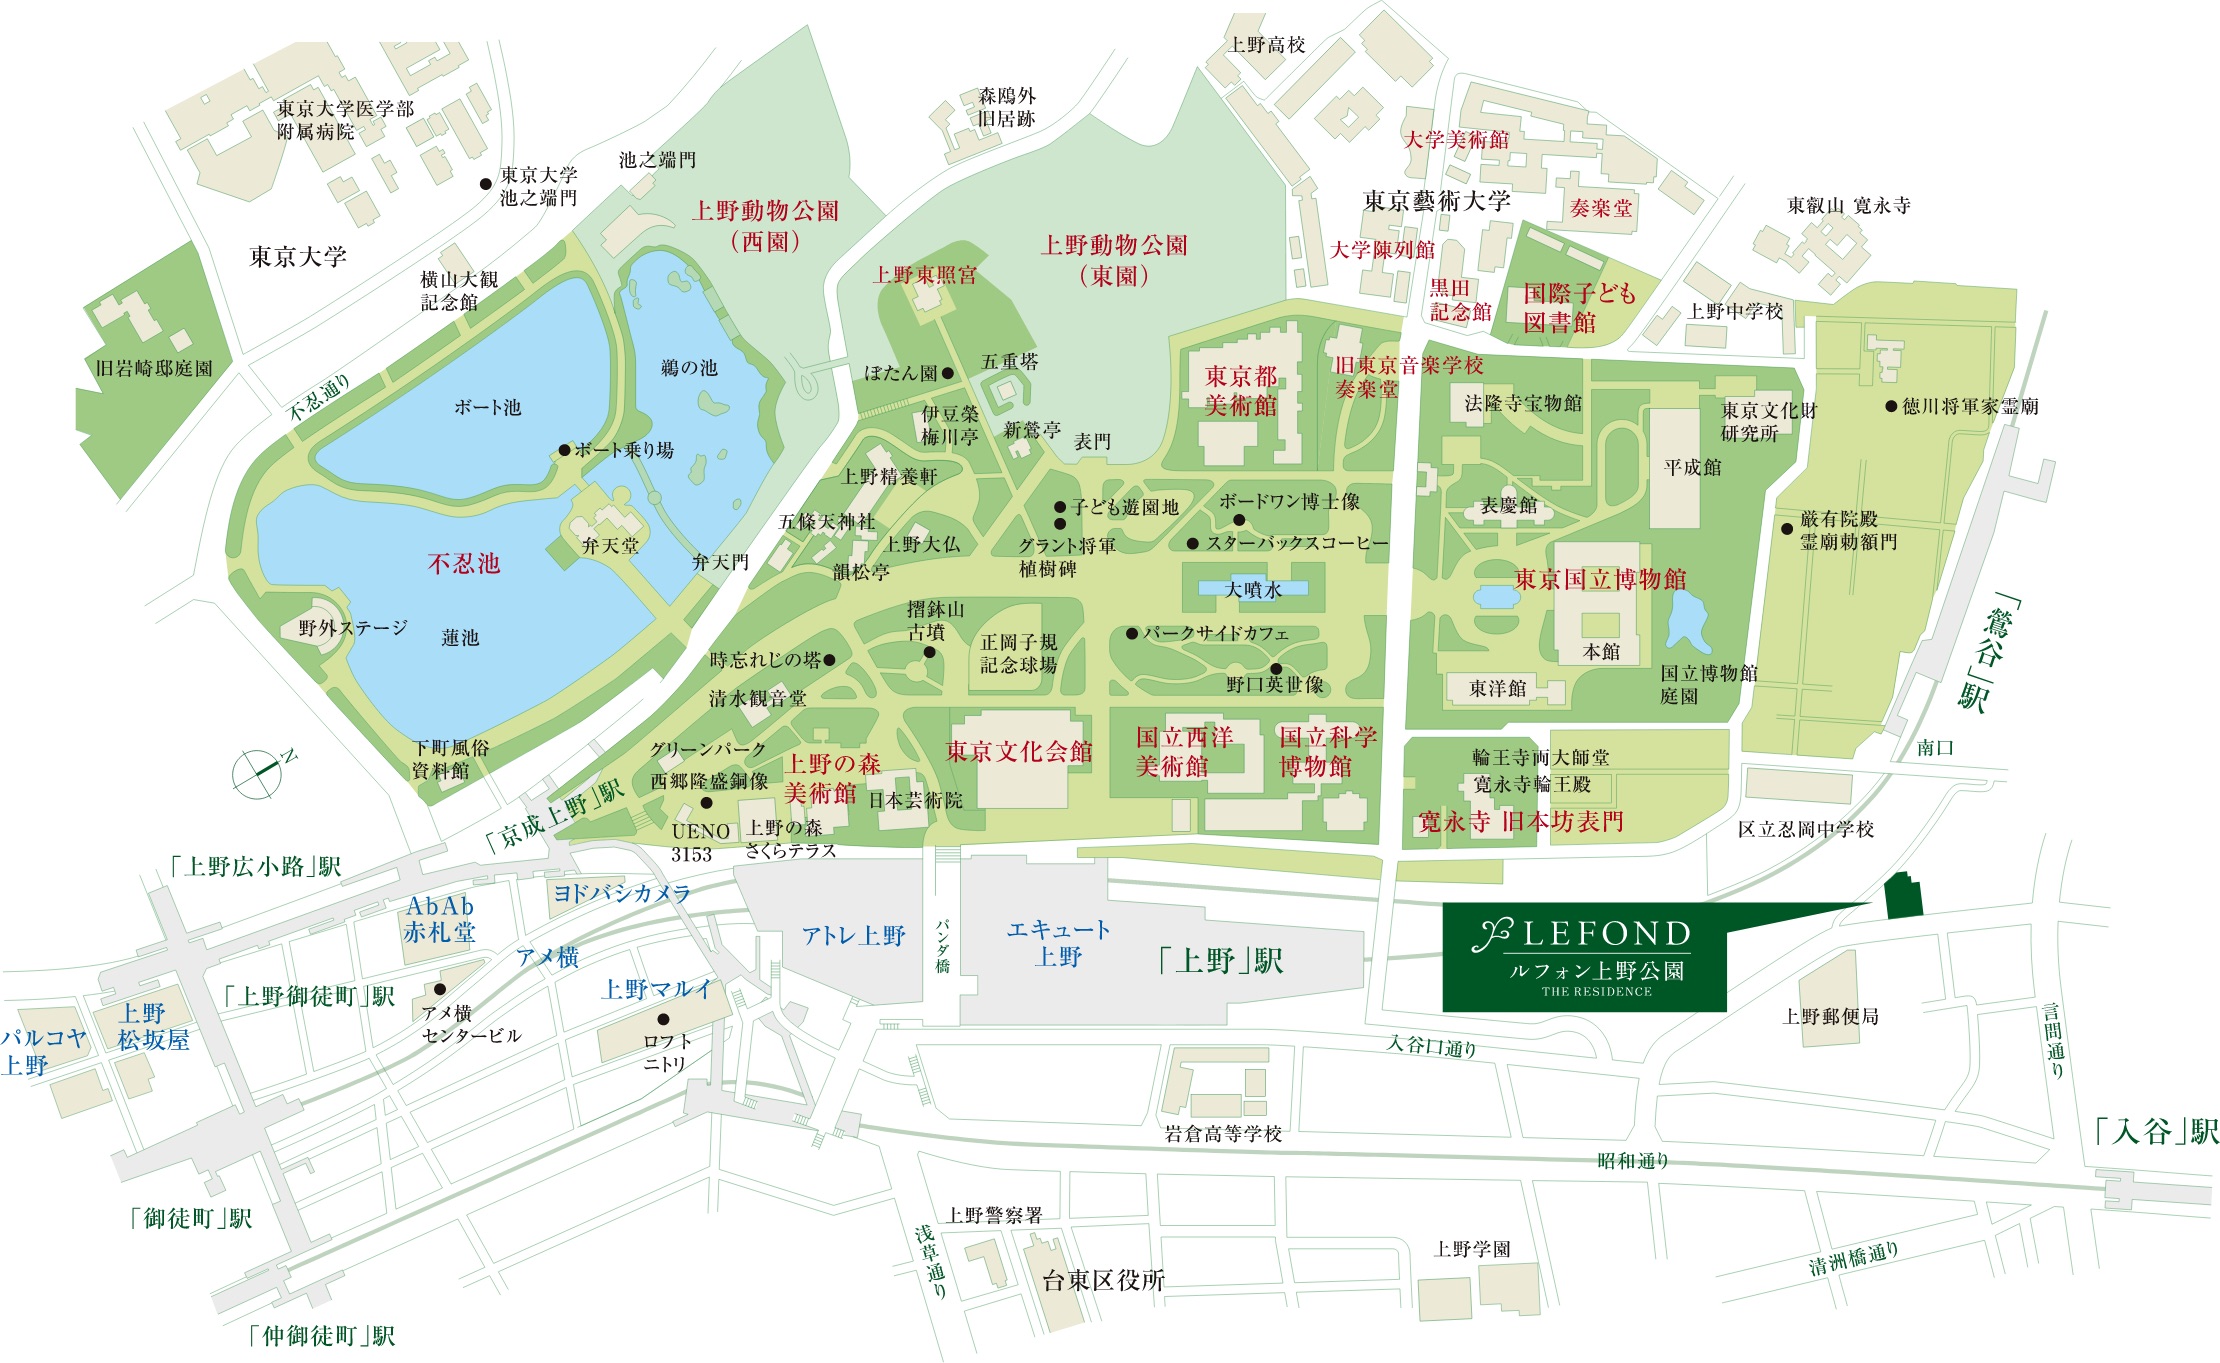 ルフォン上野公園 ザ・レジデンス《価格高騰する上野の「次の駅」という選択》【クリスティーヌ】